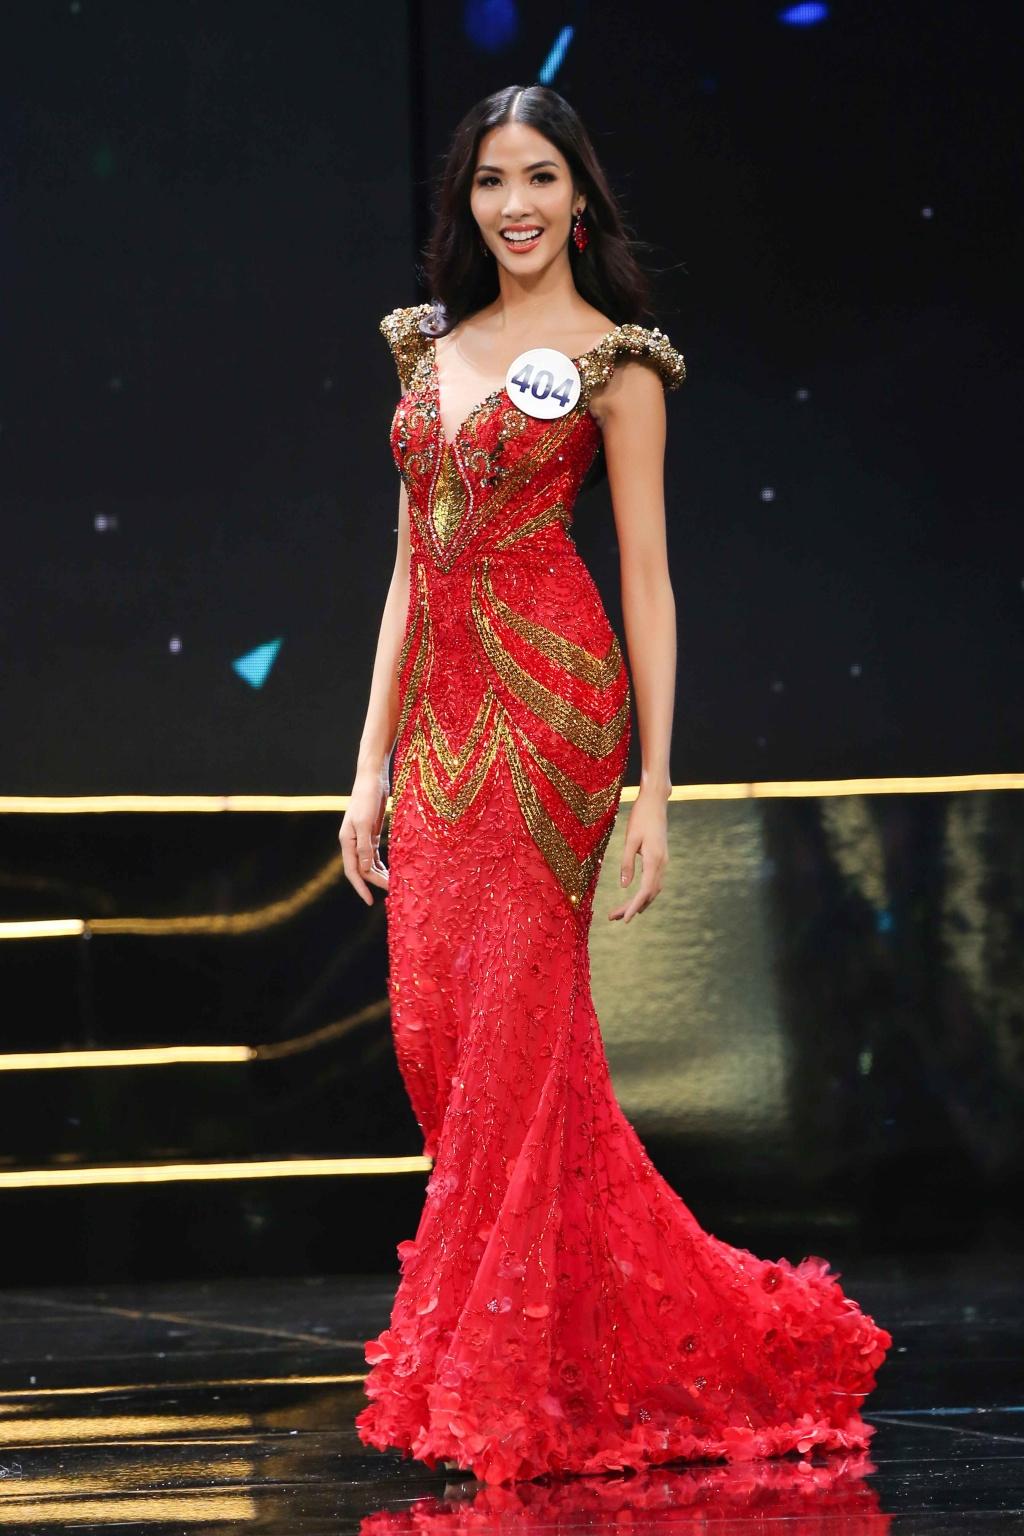 Lượng vote của Hoàng Thùy gấp 20 lần Mâu Thủy tại Hoa hậu Hoàn vũ Việt Nam 2017-5